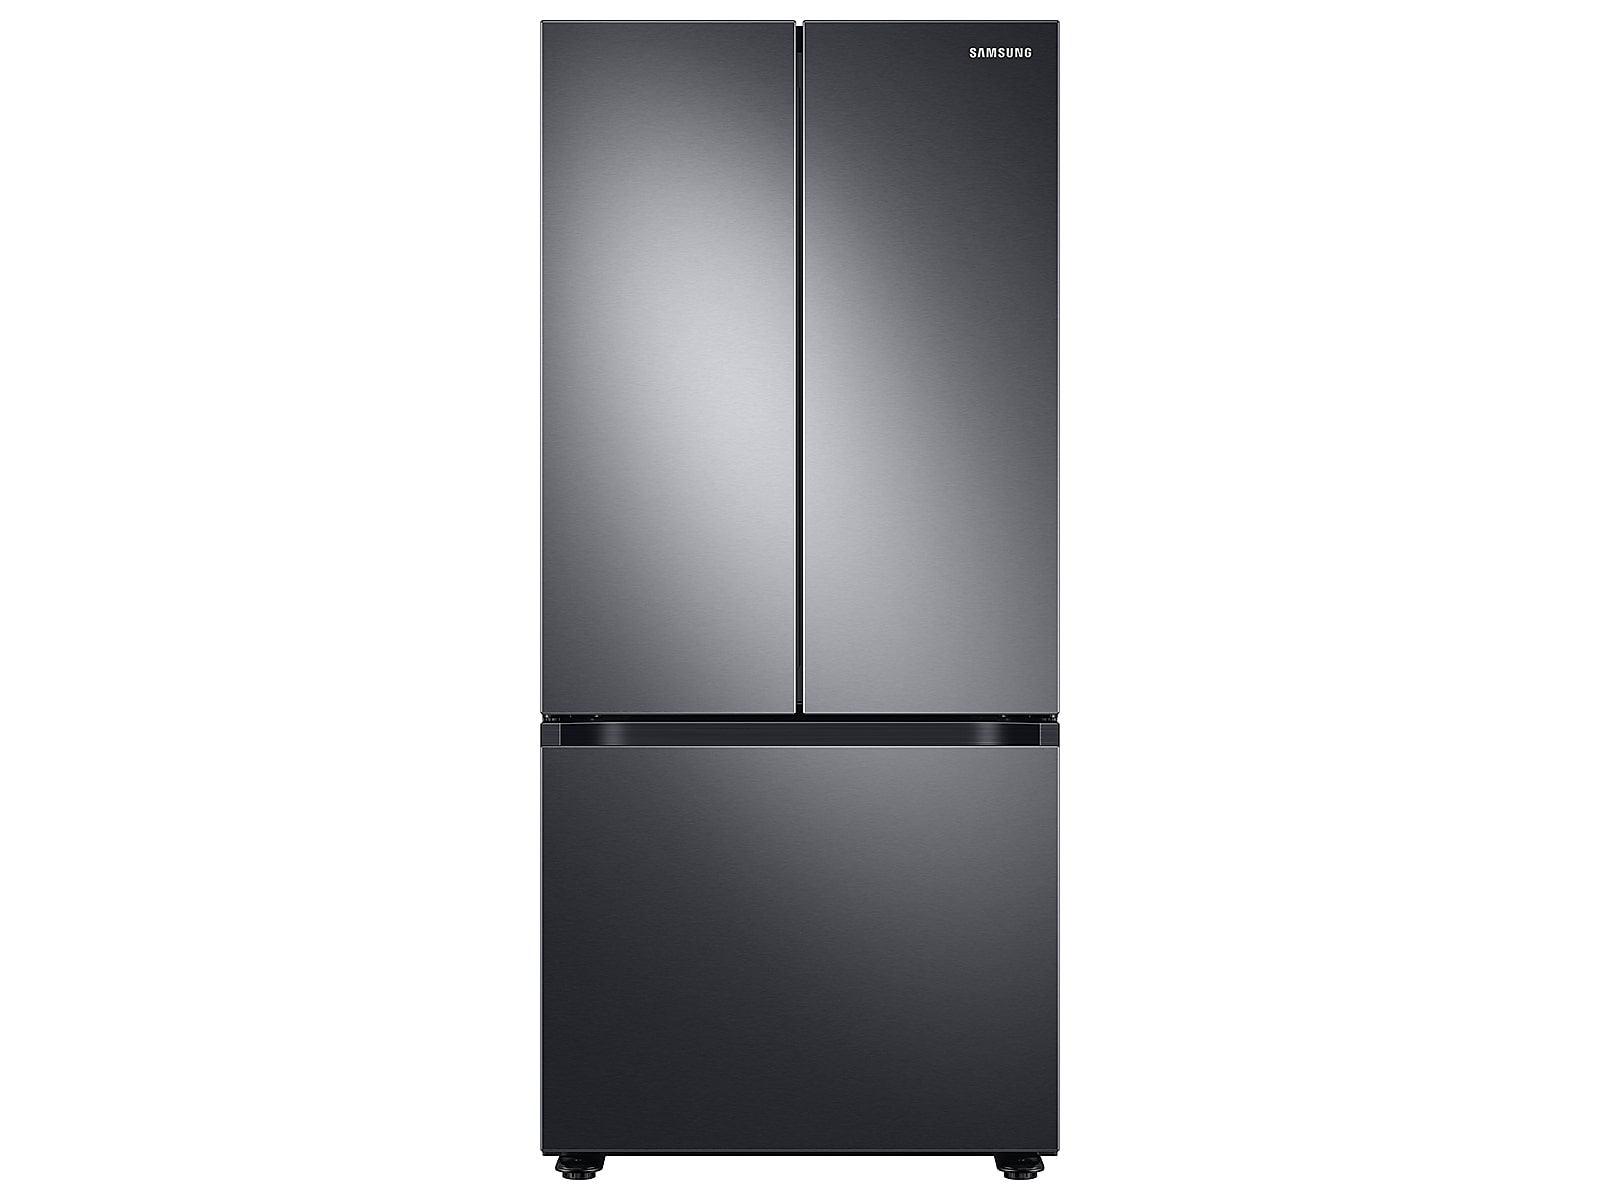 Samsung 22 cu. ft. Smart 3-Door French Door Refrigerator in Black Stainless Steel(RF22A4121SG/AA)